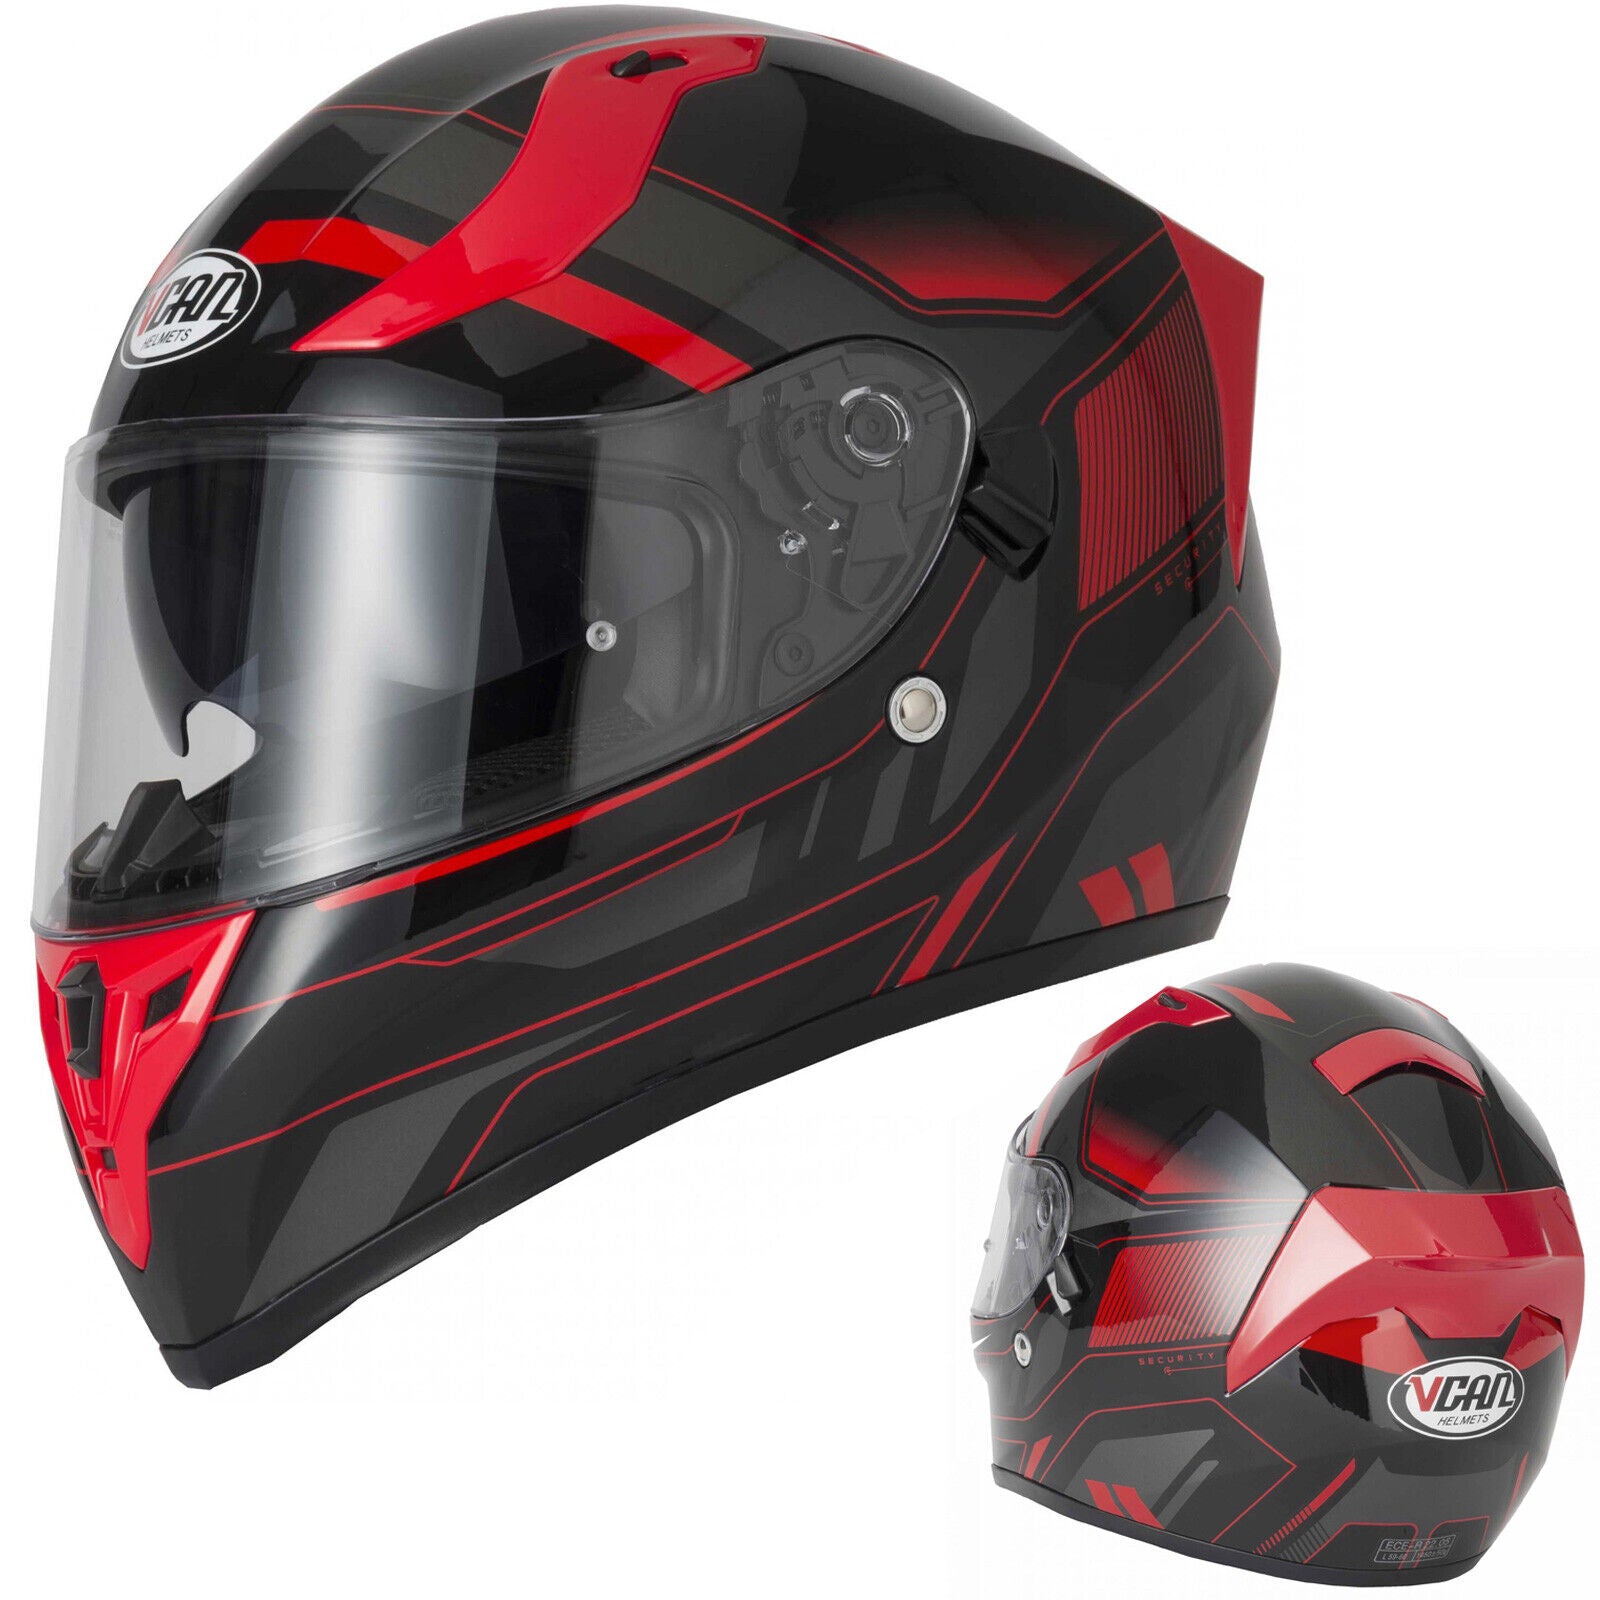 Riderwear | VCAN H128 Helvet Red Full Face Helmet